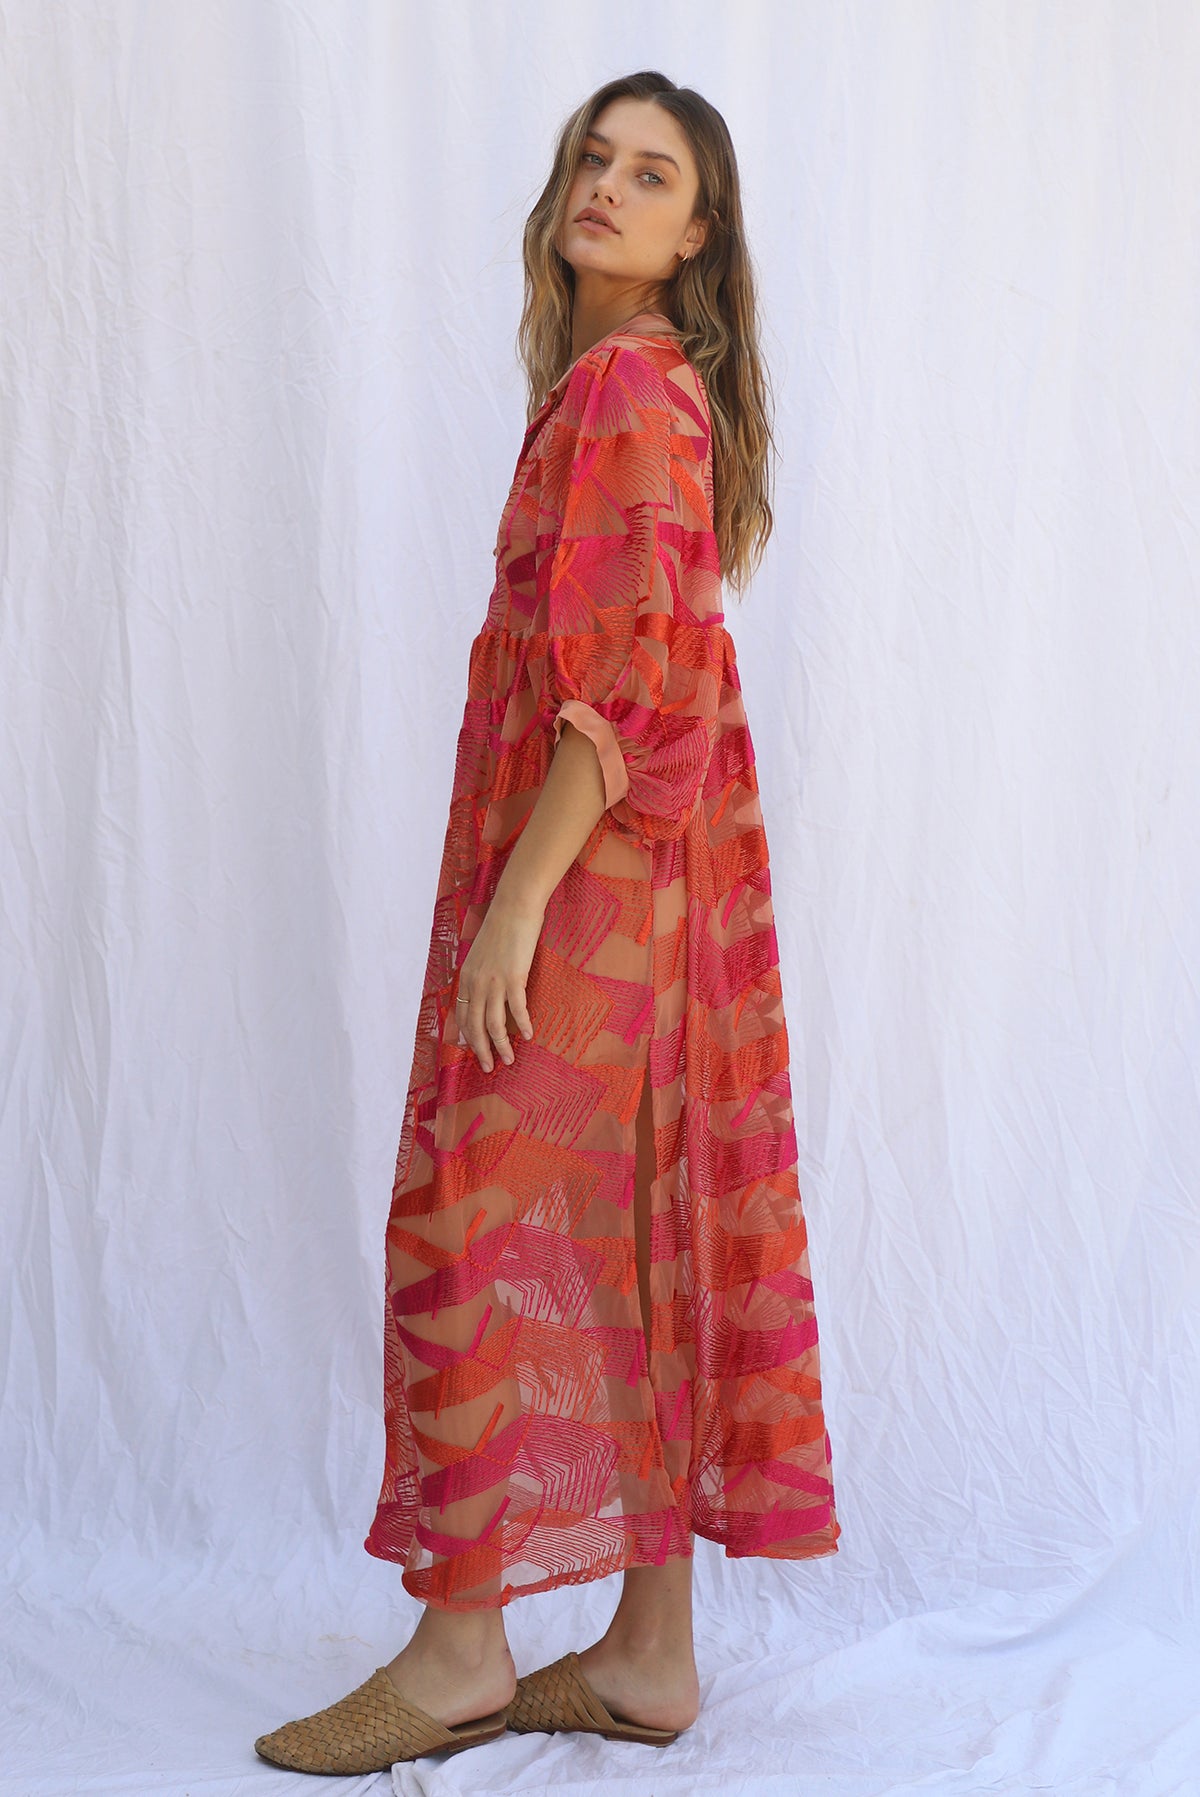 Desert Sky Medellin Dress with Slip